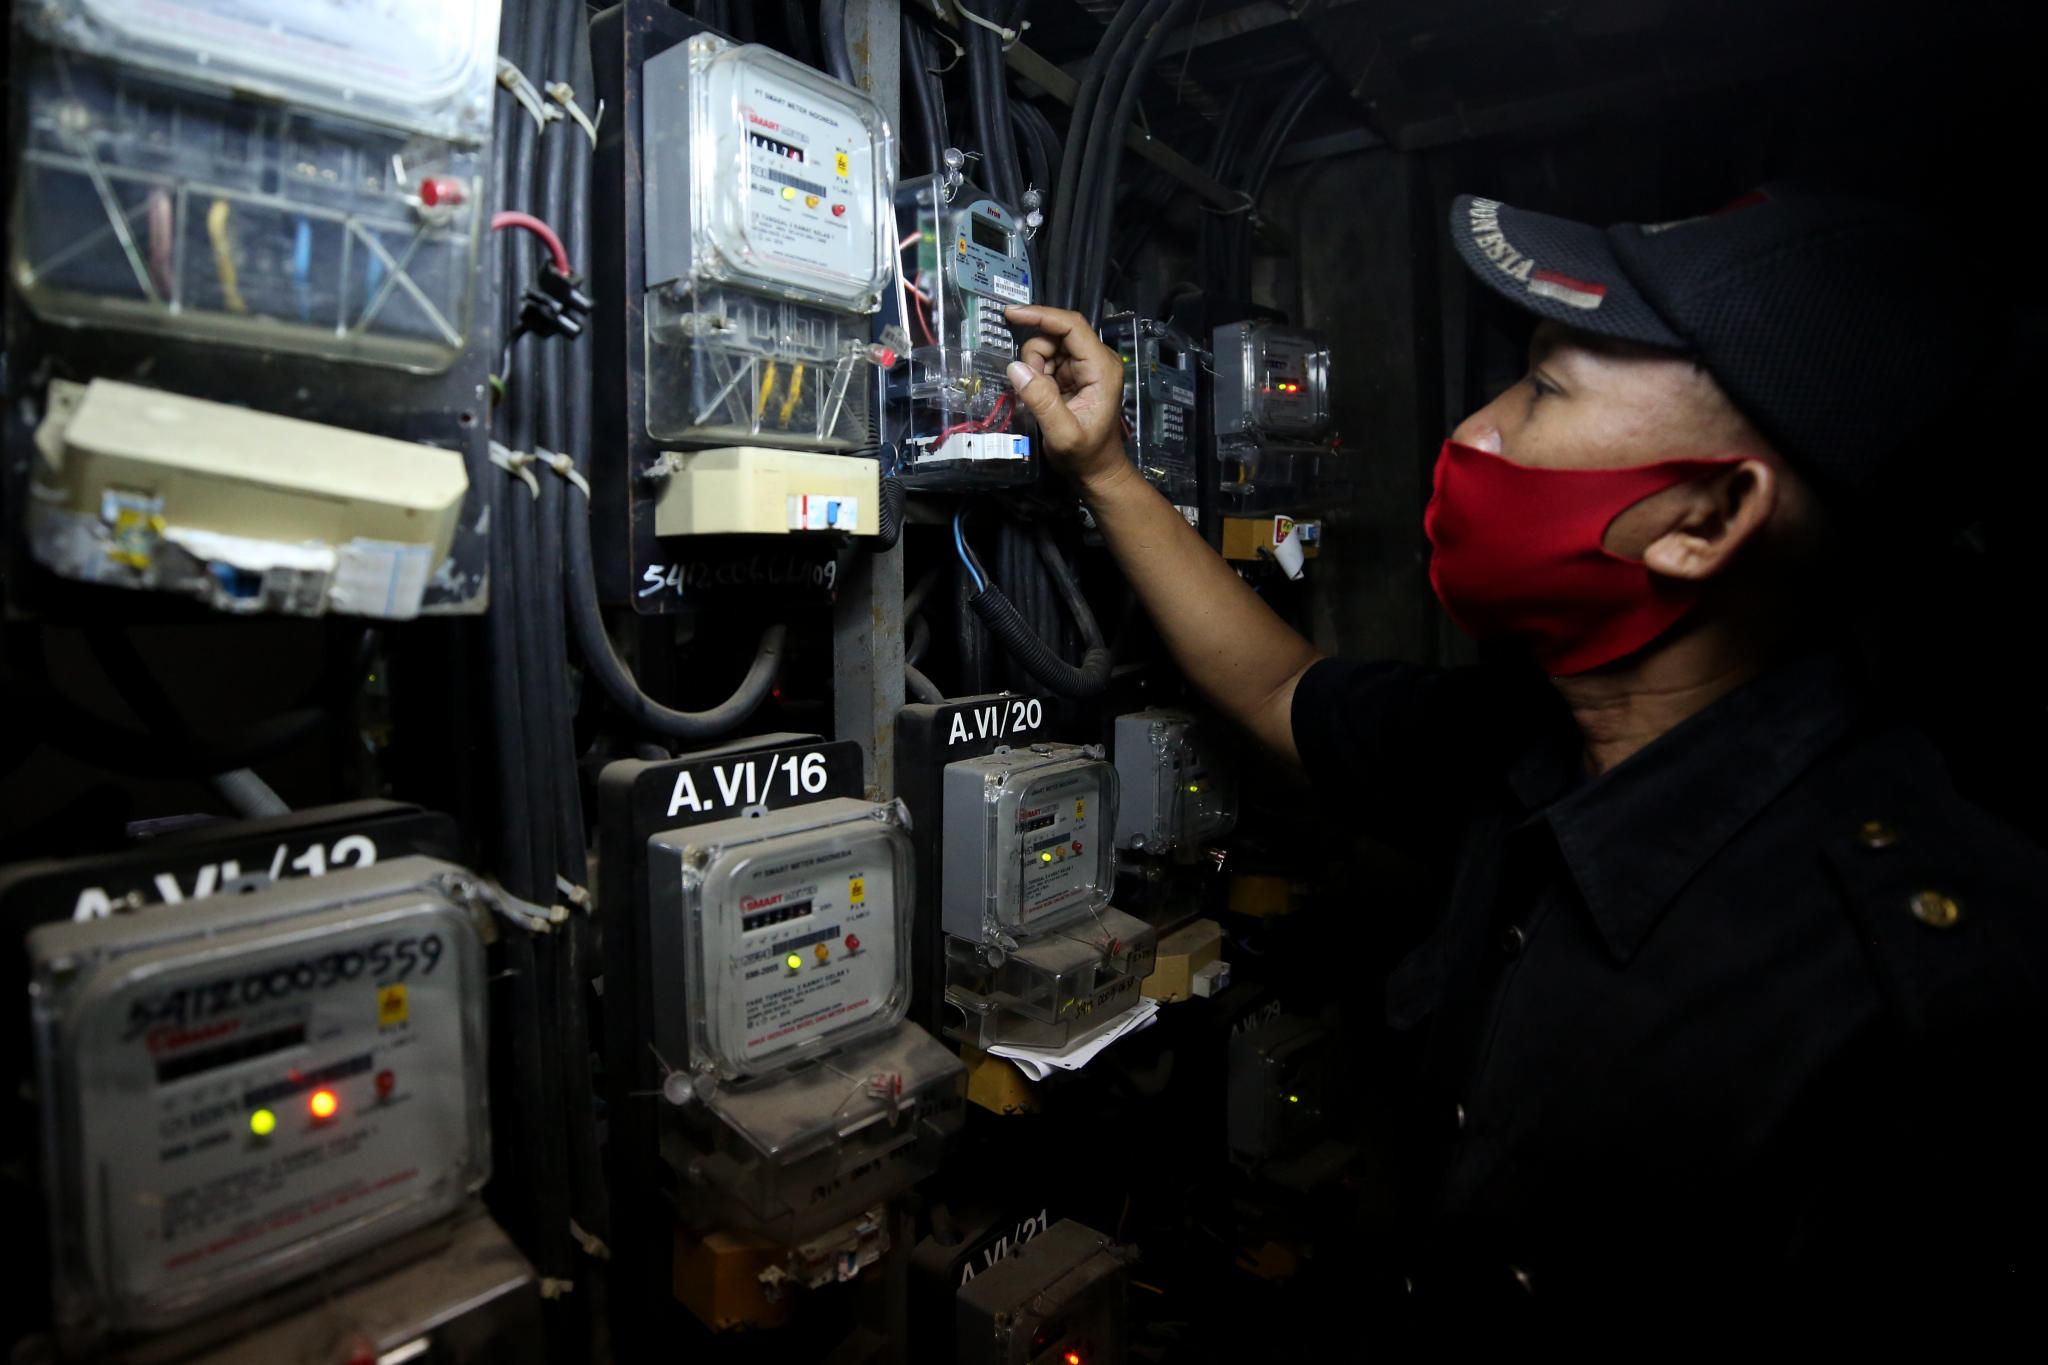 <p>Petugas melakukan pengisian token listrik di instalasi meteran listrik Rusun Benhil, Pejernihan, Jakarta, Jum&#8217;at, 9 April 2021. Foto: Ismail Pohan/TrenAsia</p>
